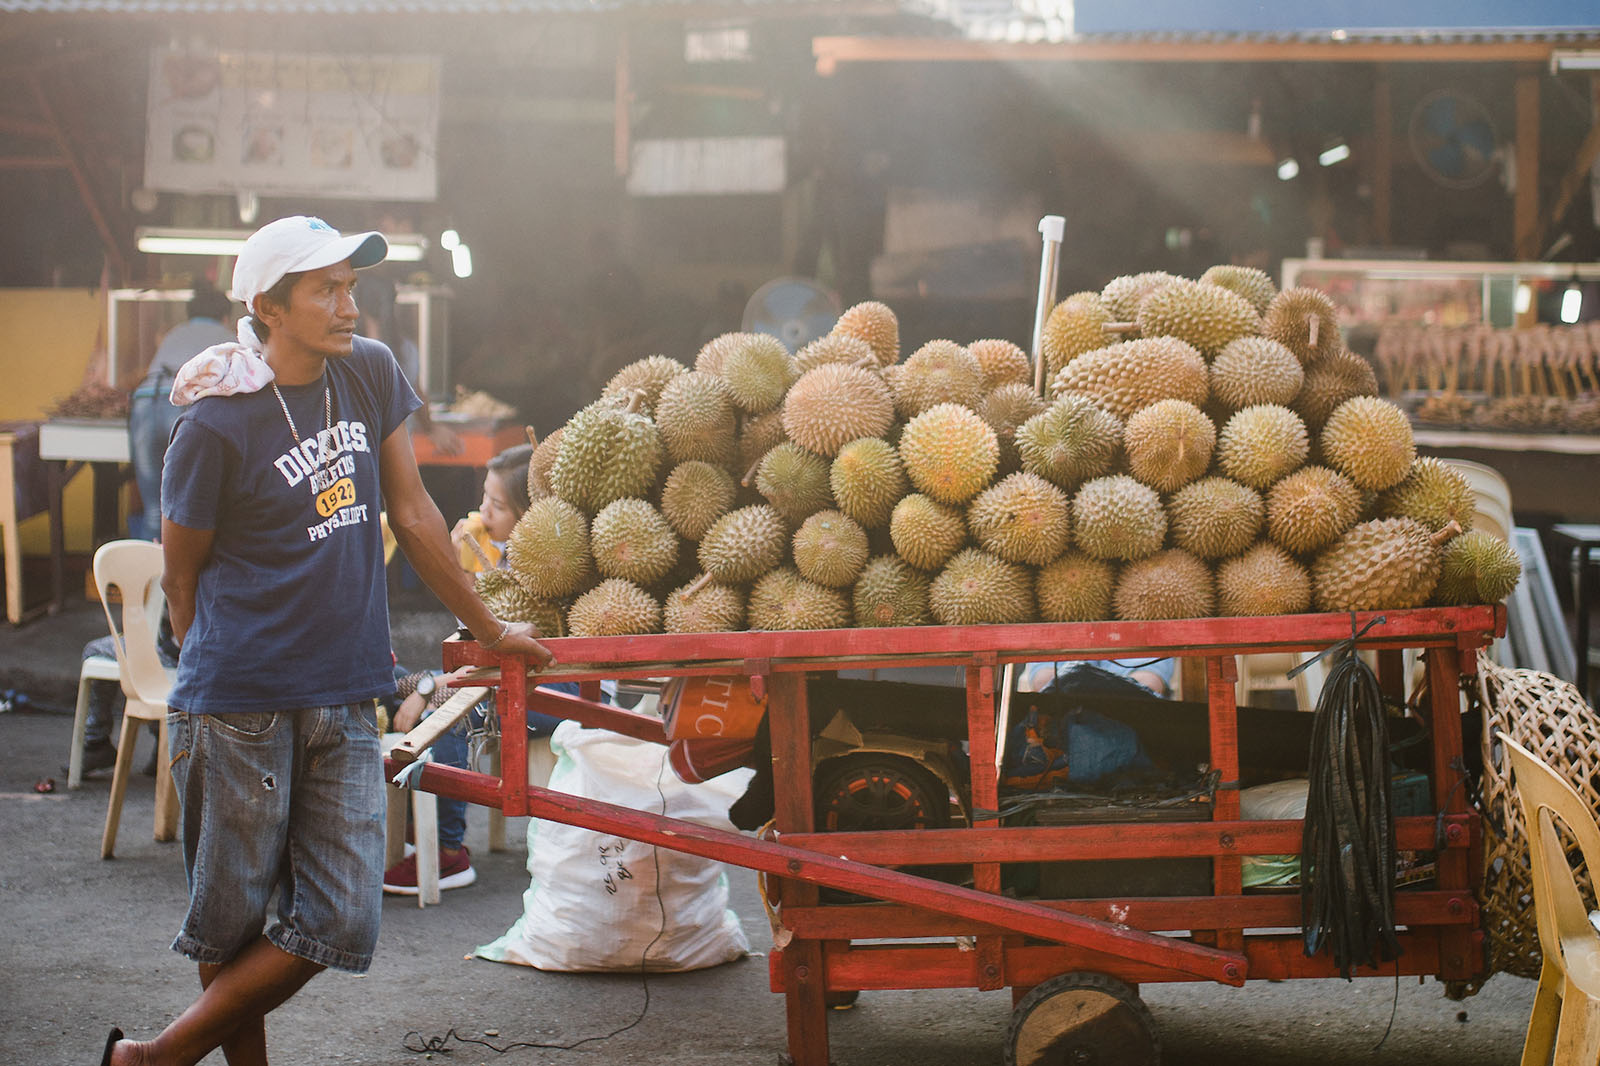 A durian vendor at the outdoor market, Davao